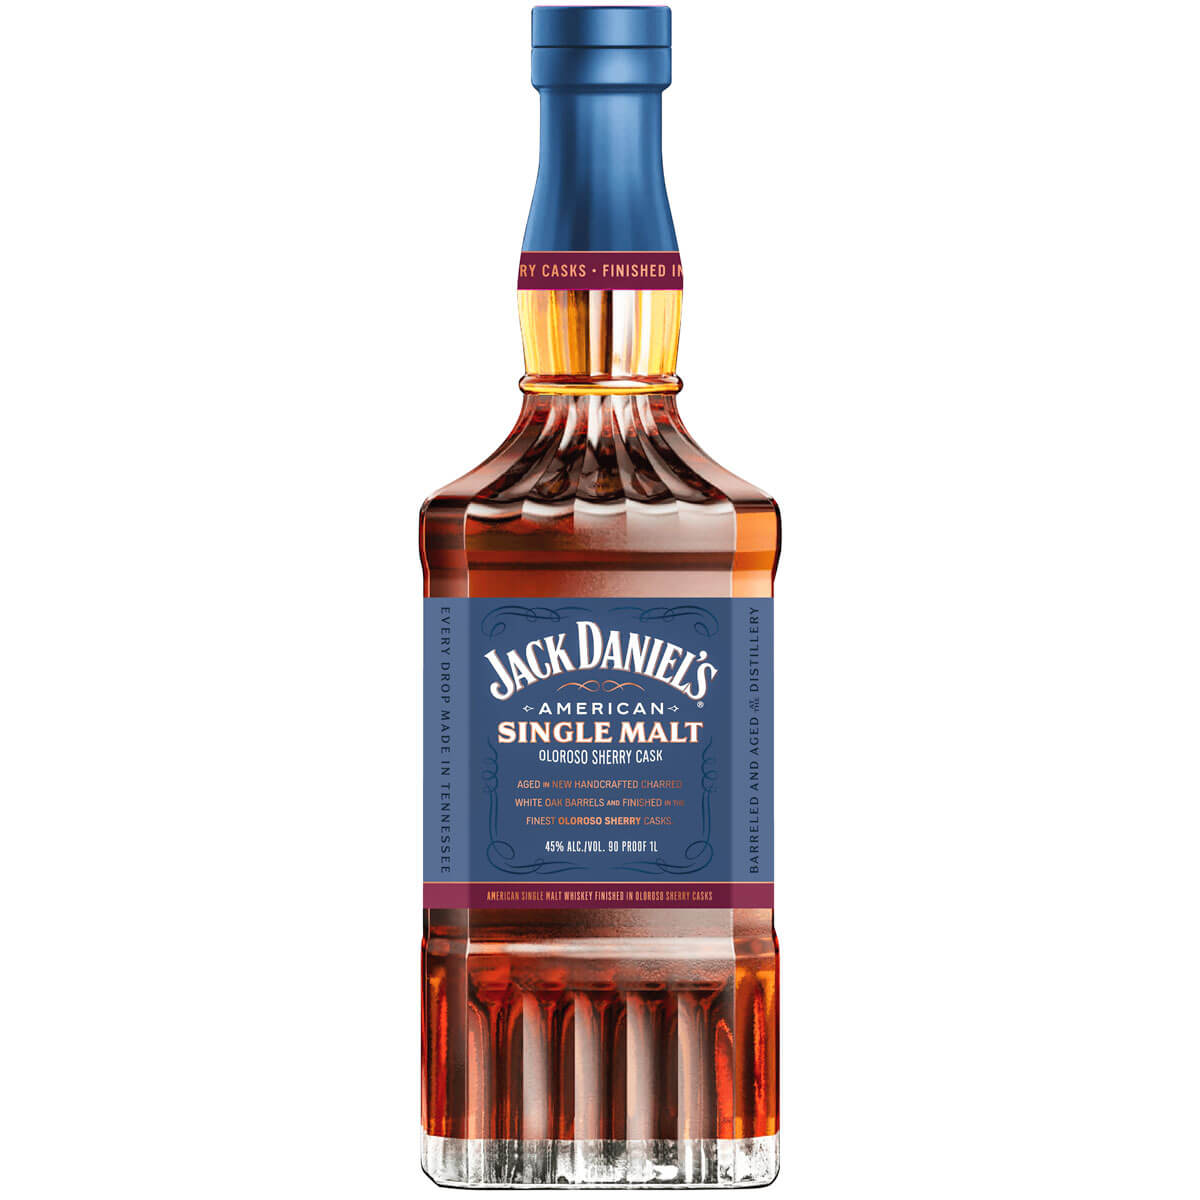 Jack Daniel’s American Single Malt bottle